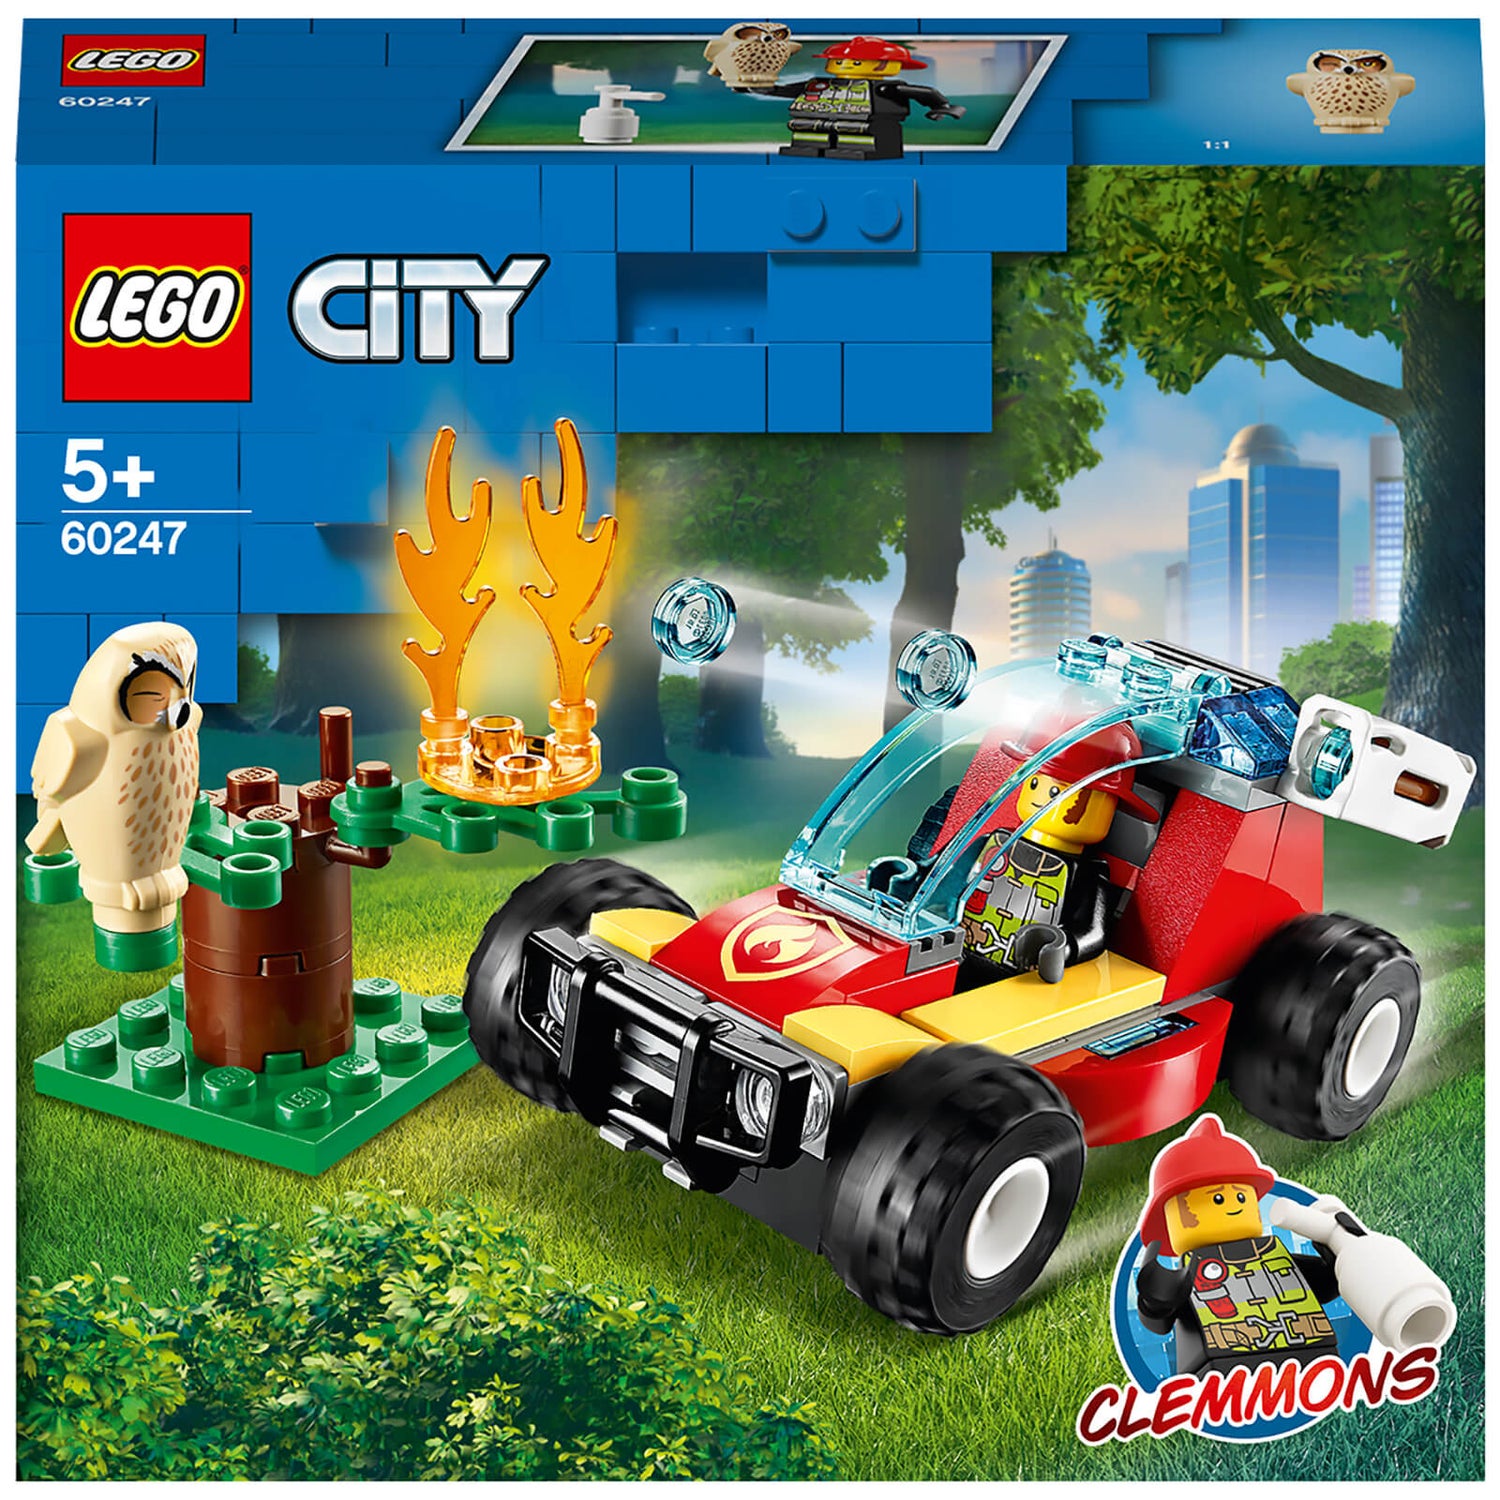 LEGO City: Forest Fire Response Buggy Building Set (60247) Toys - Zavvi UK